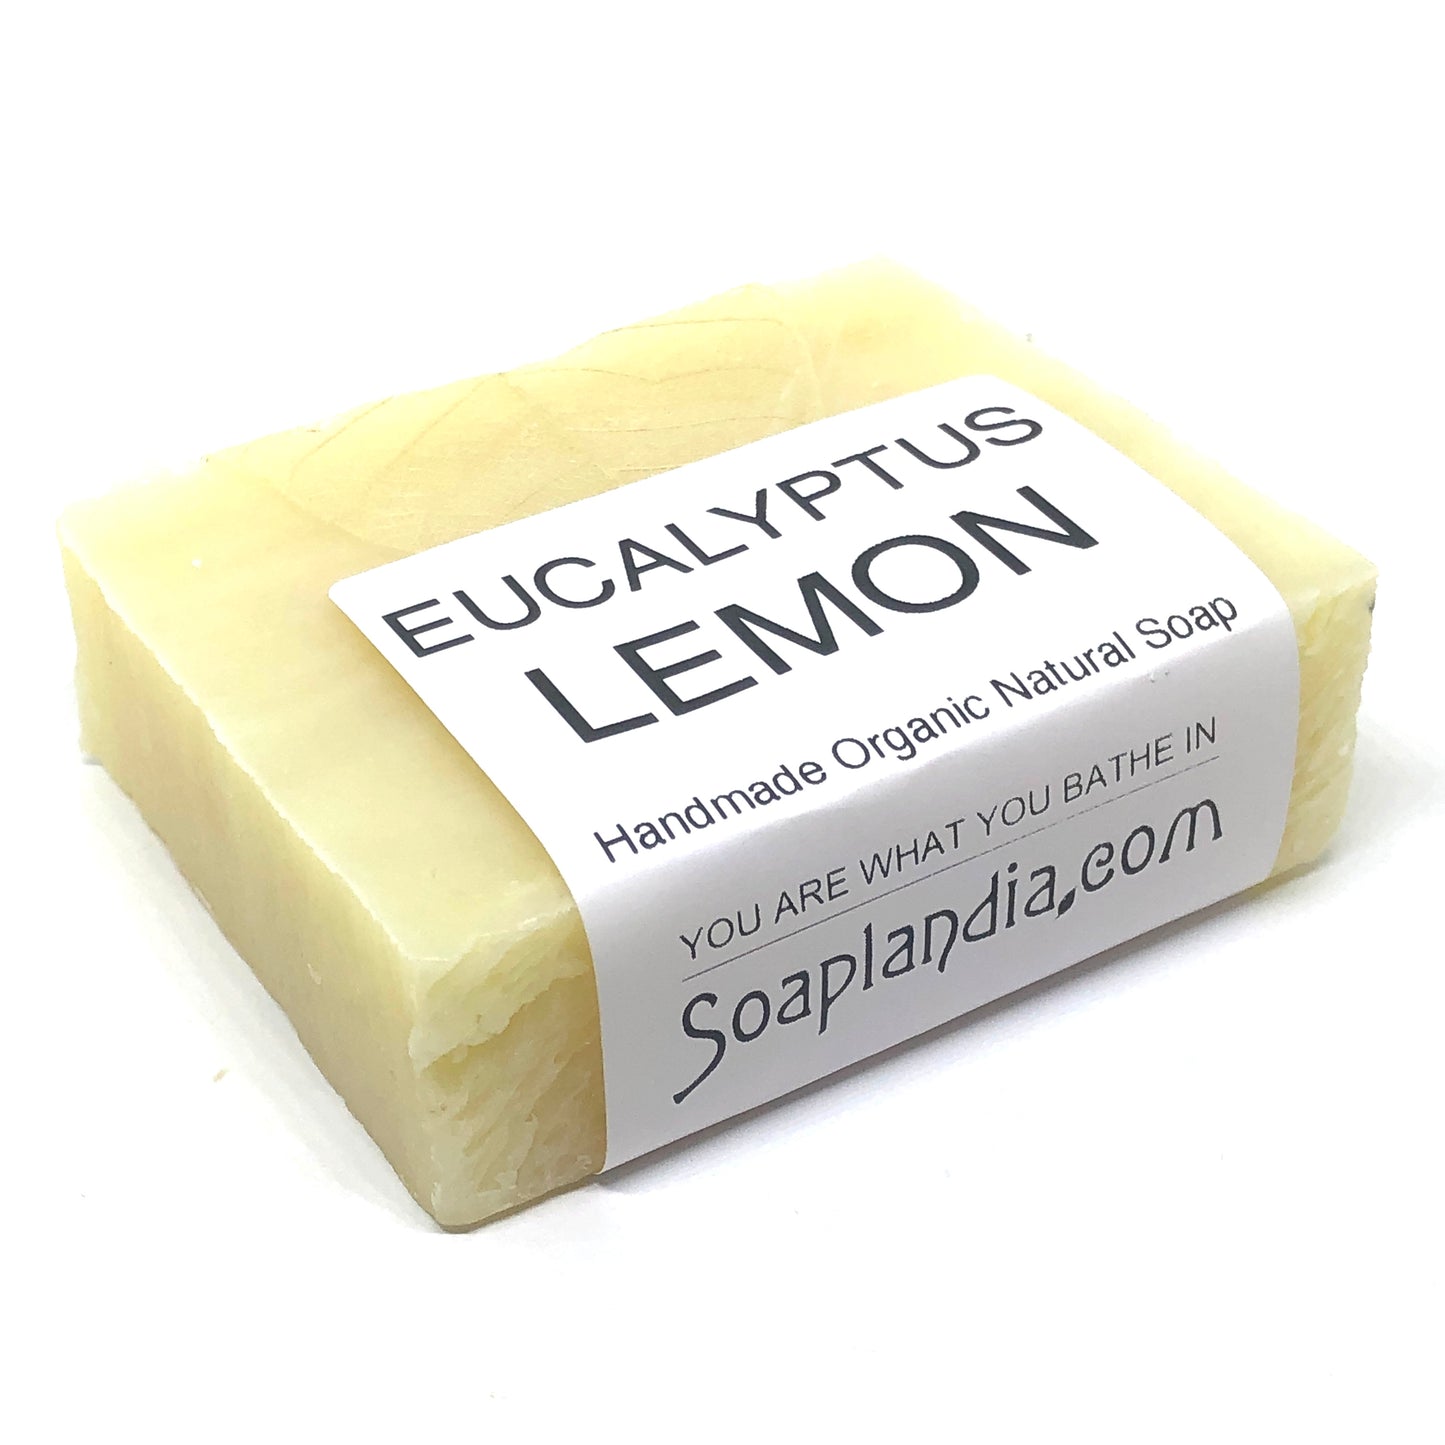 Eucalyptus Lemon Bar Soap, Organic